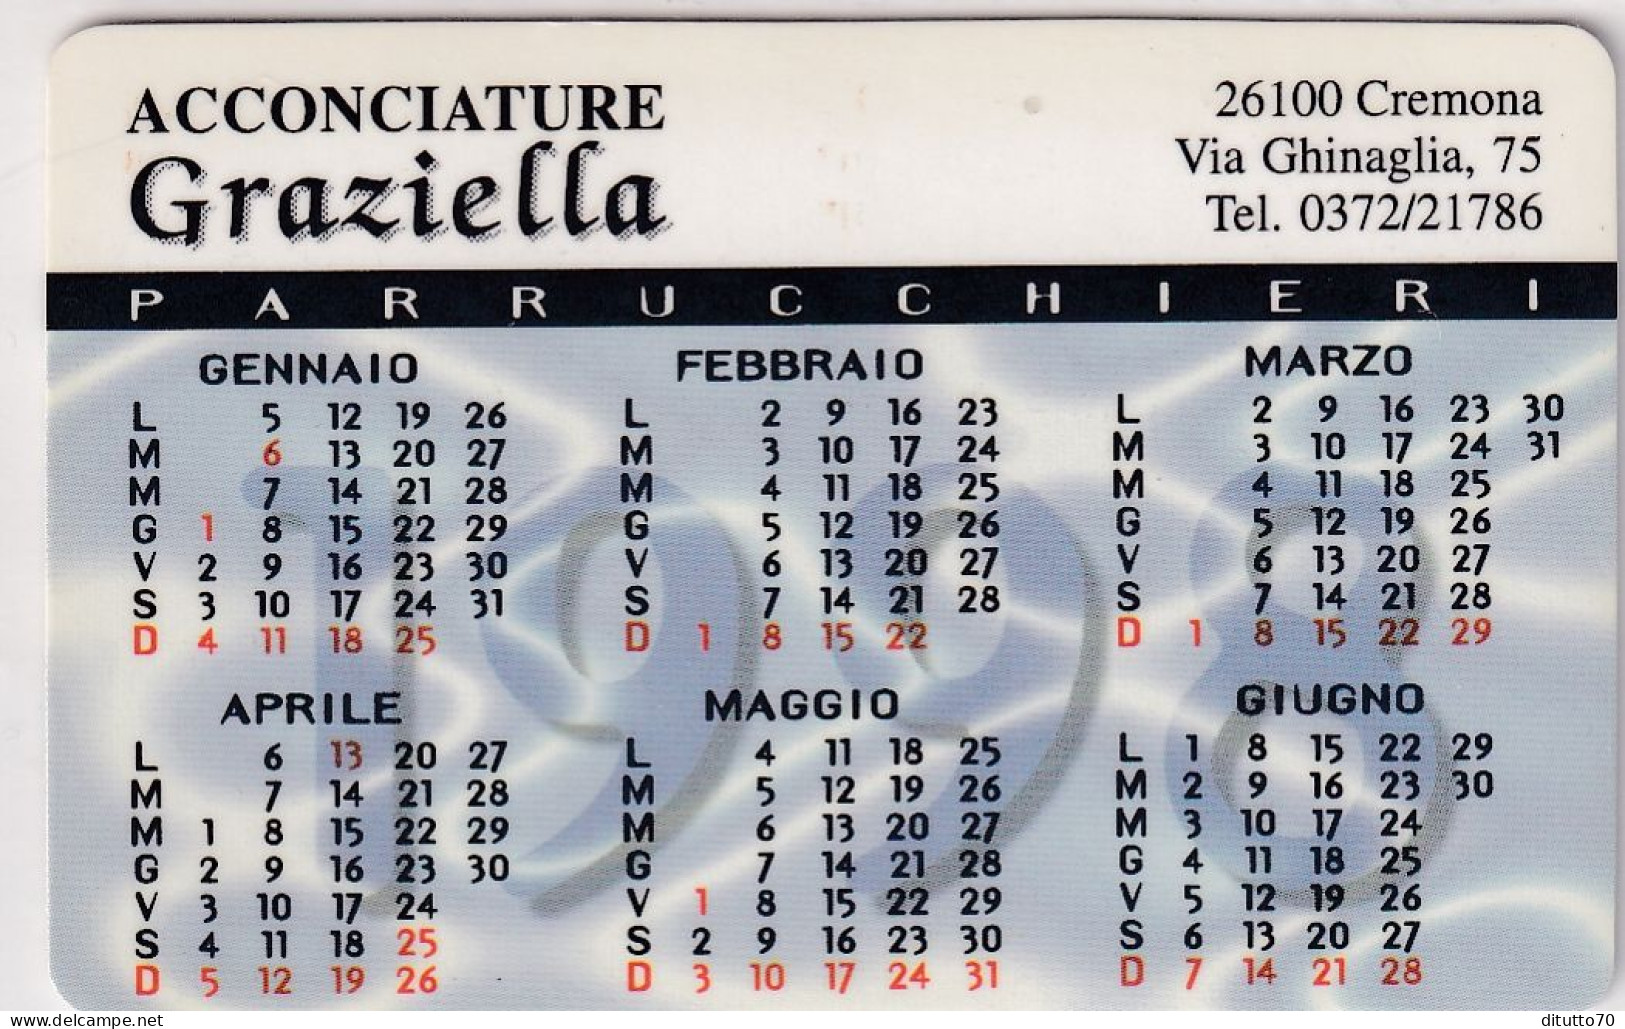 Calendarietto - Acconciature - Graziella - Cremona - Anno 1998 - Klein Formaat: 1991-00